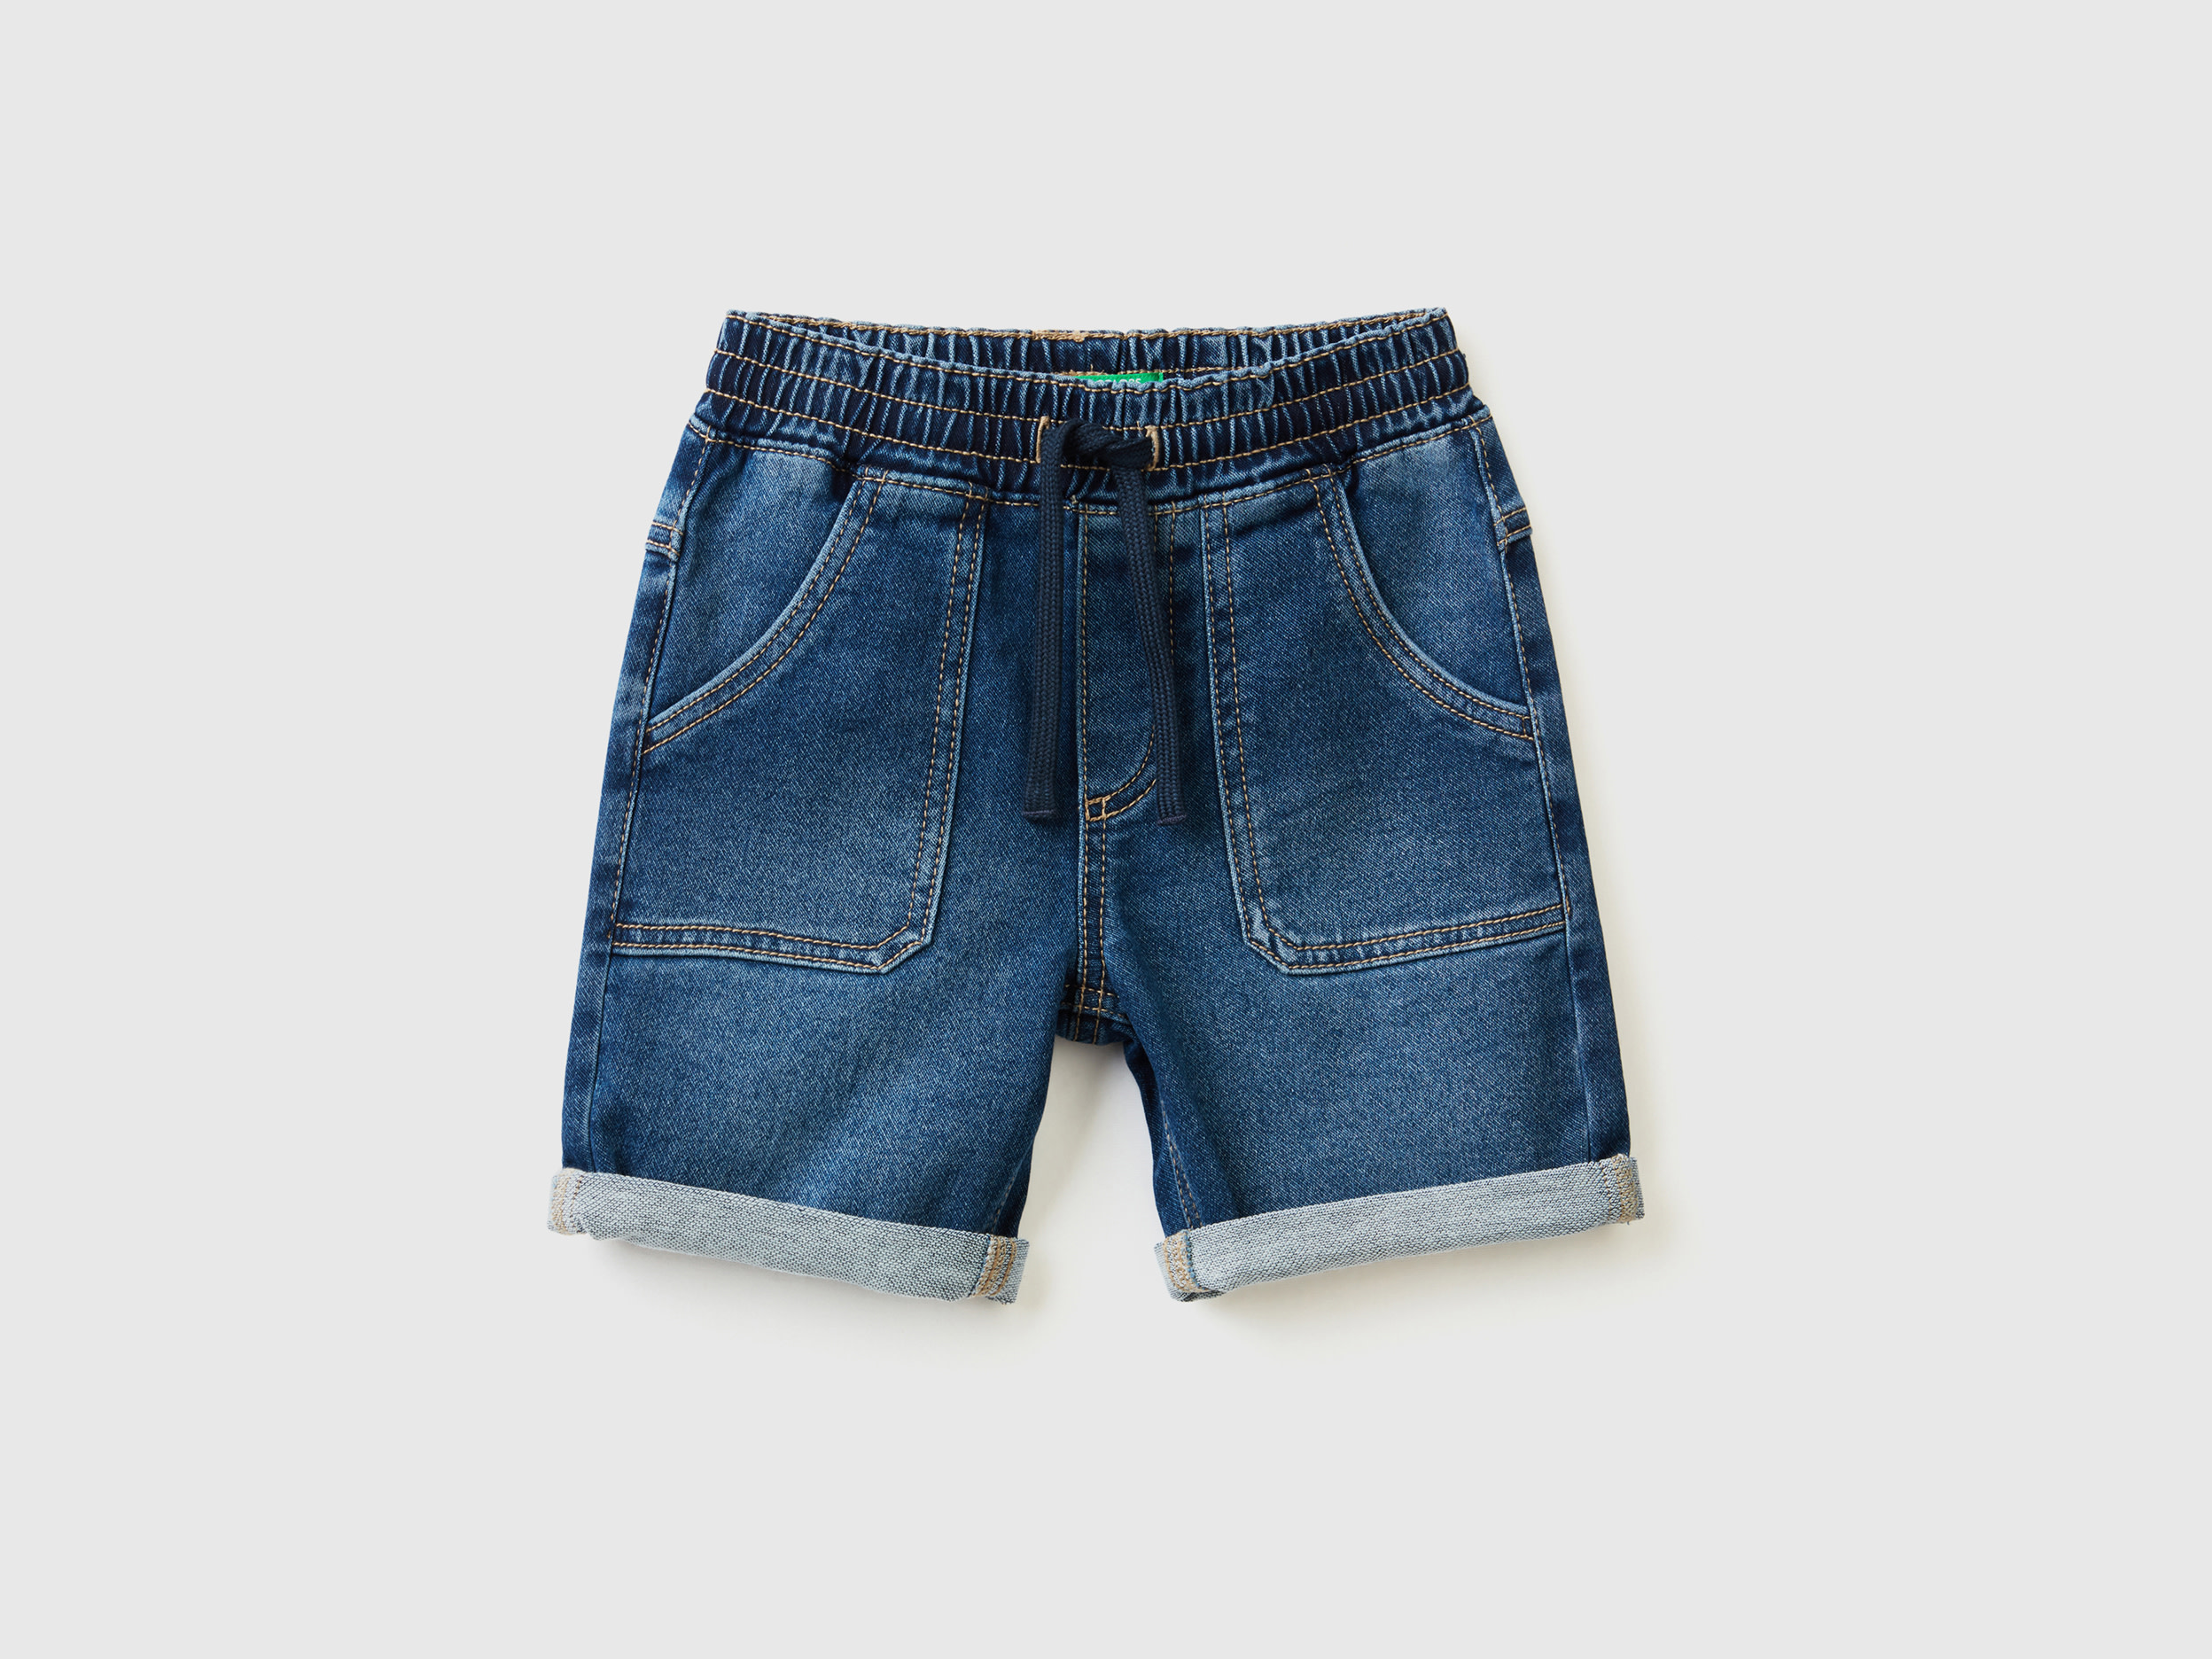 Benetton, Shorts In Stretch Denim, size 2-3, Blue, Kids